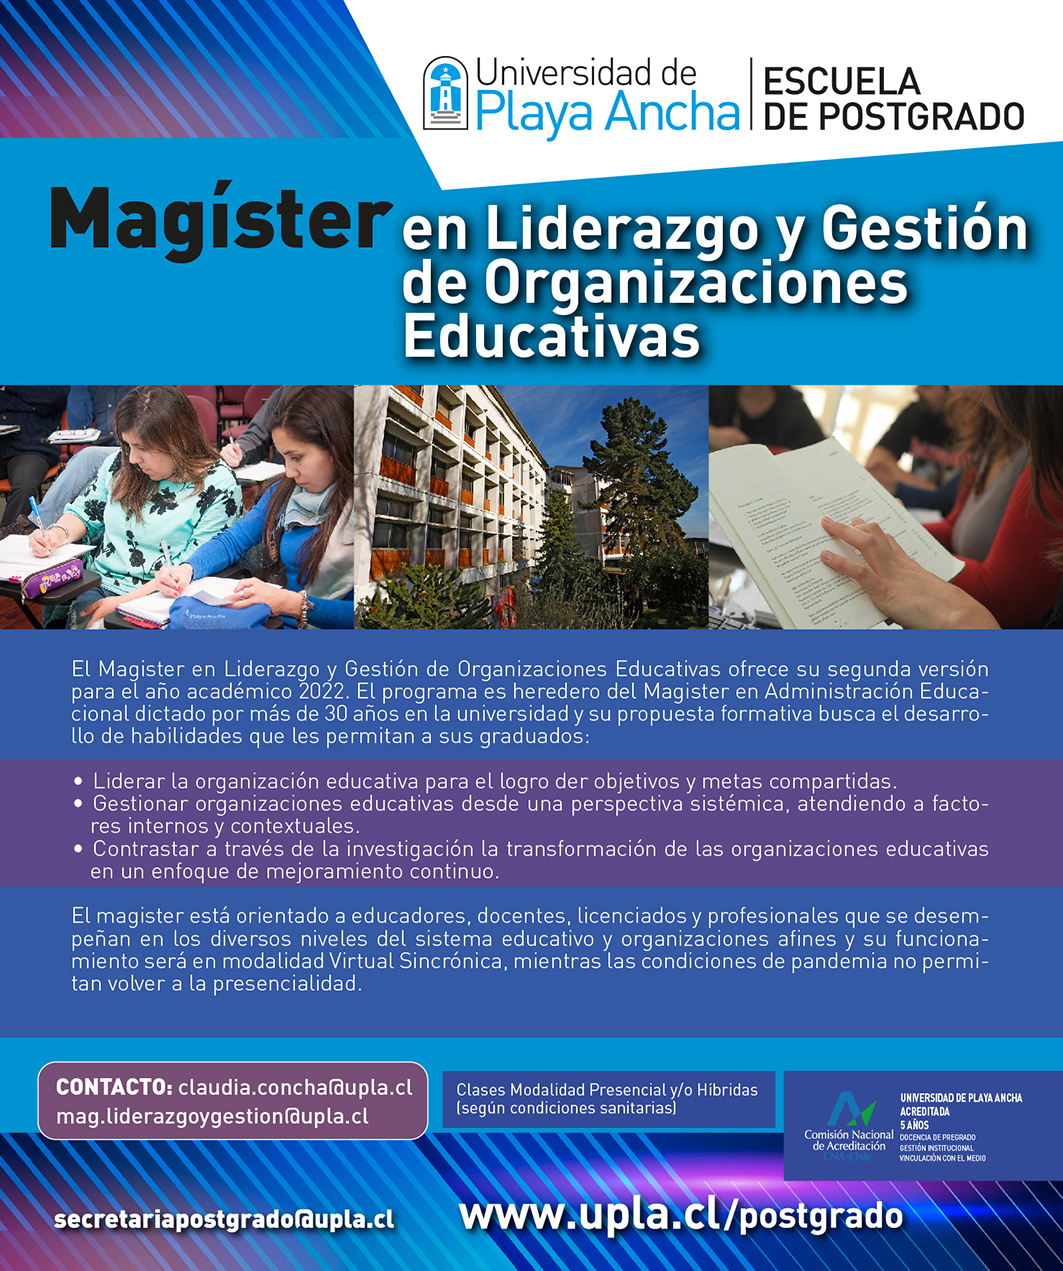 Magíster en Liderazgo y Gestión de Organizaciones Educativas UPLA